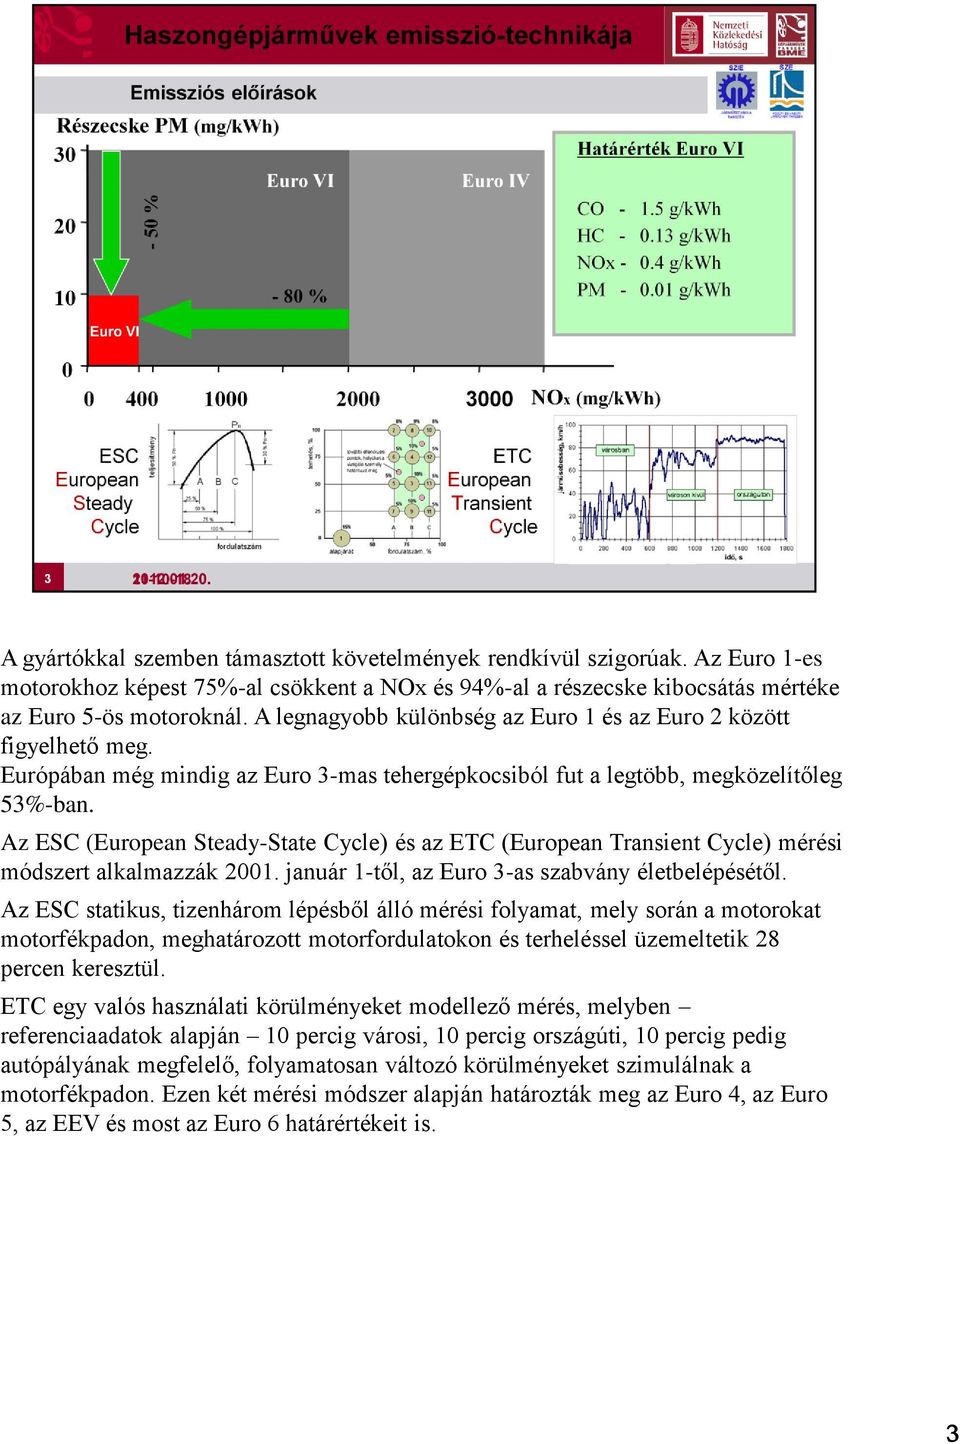 Az ESC (European Steady-State Cycle) és az ETC (European Transient Cycle) mérési módszert alkalmazzák 2001. január 1-től, az Euro 3-as szabvány életbelépésétől.